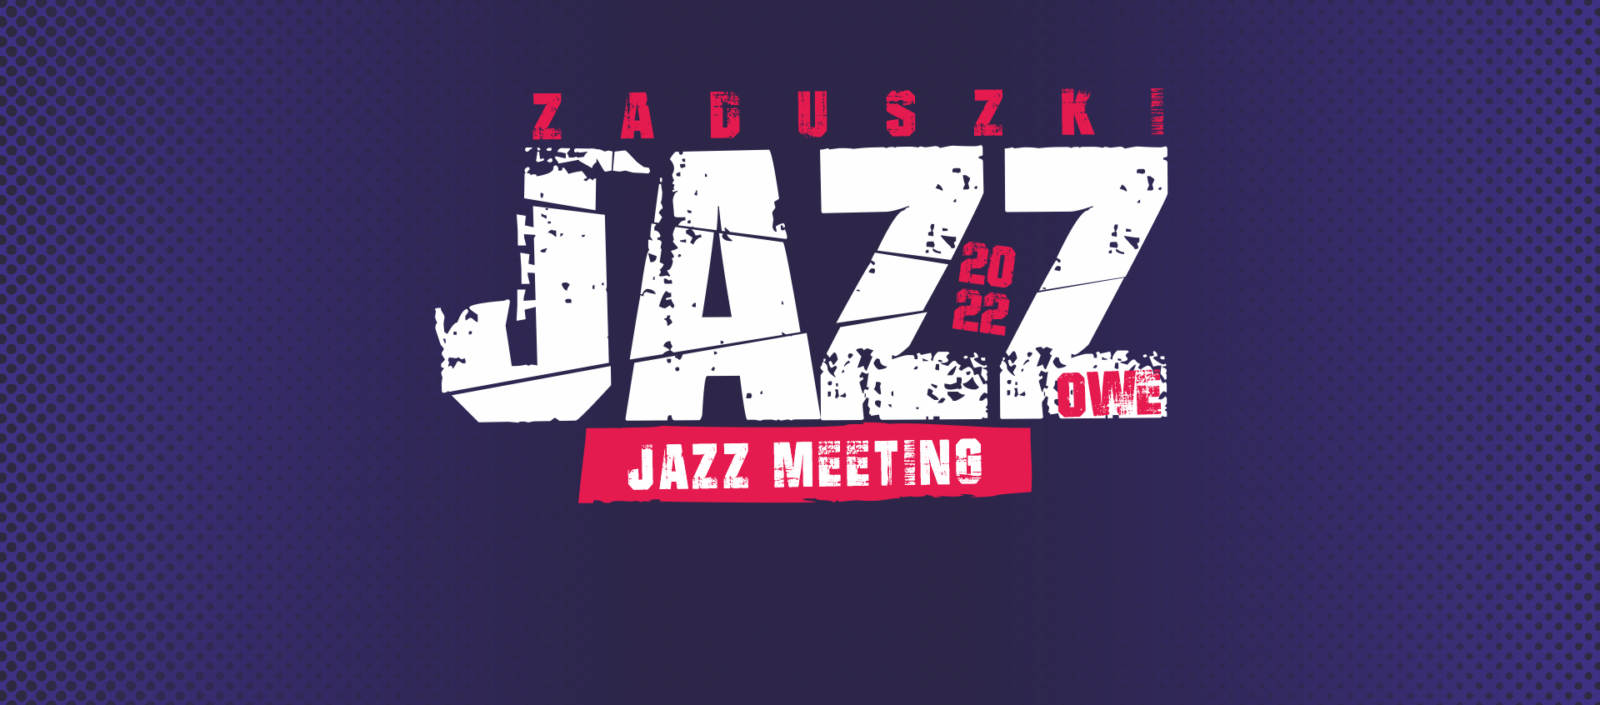 Jazz Meeting Zaduszki Jazzowe